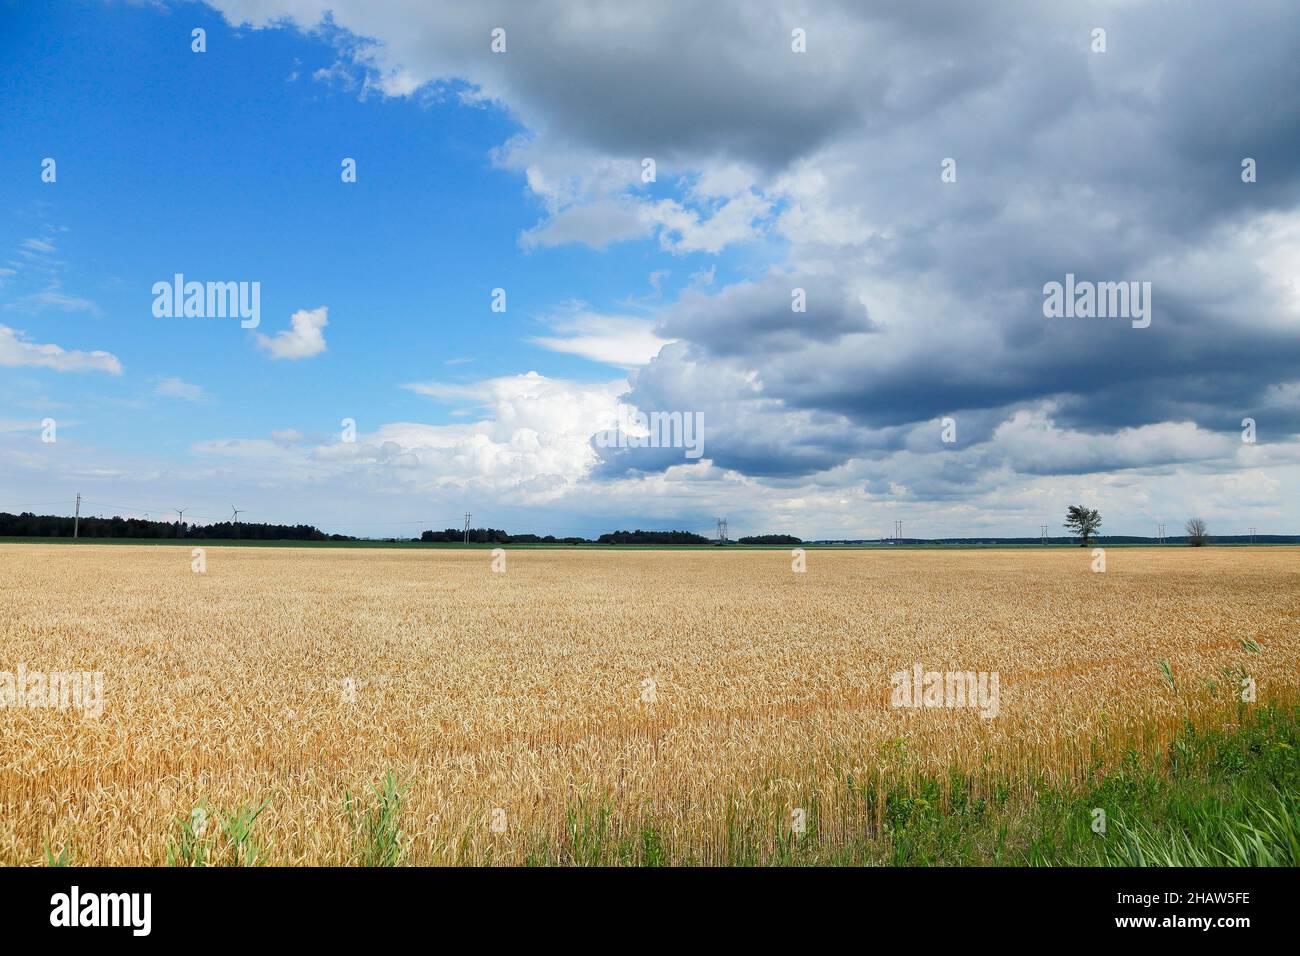 Wheatfield, farmland landscape, Province of Quebec, Canada Stock Photo